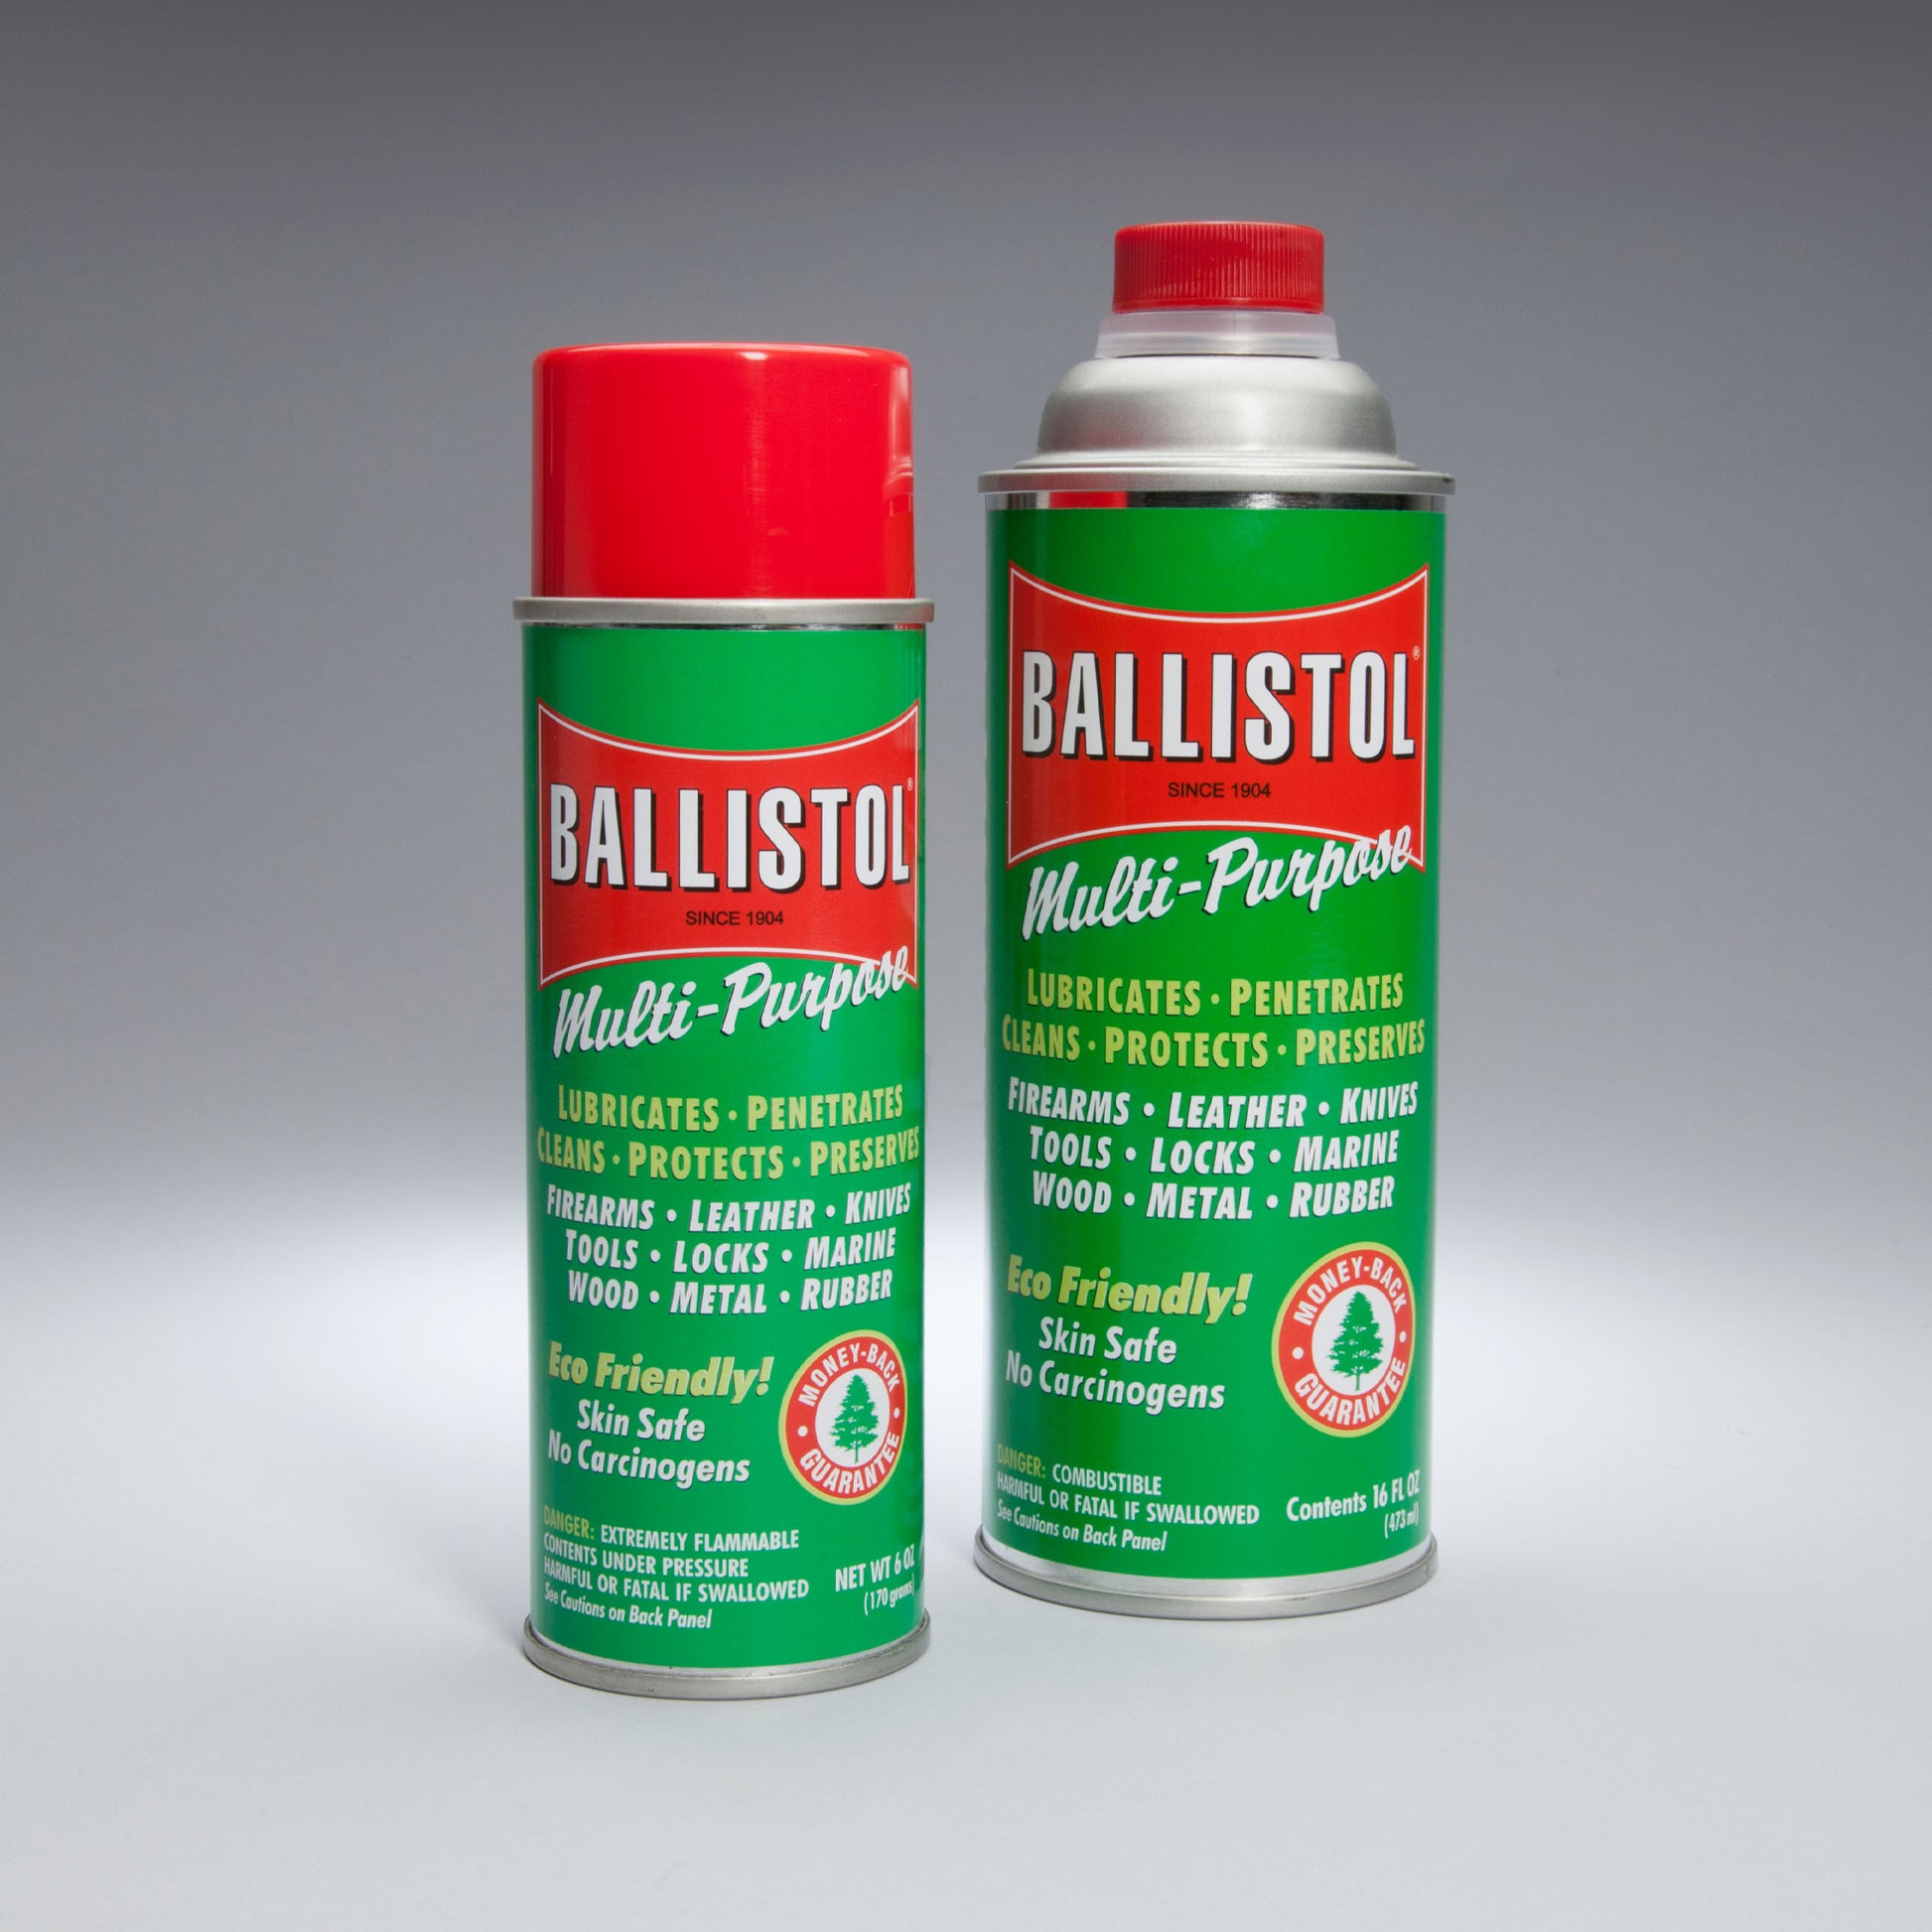 Ballistol Spray Huile 200ml - BALLISTOL - 8242